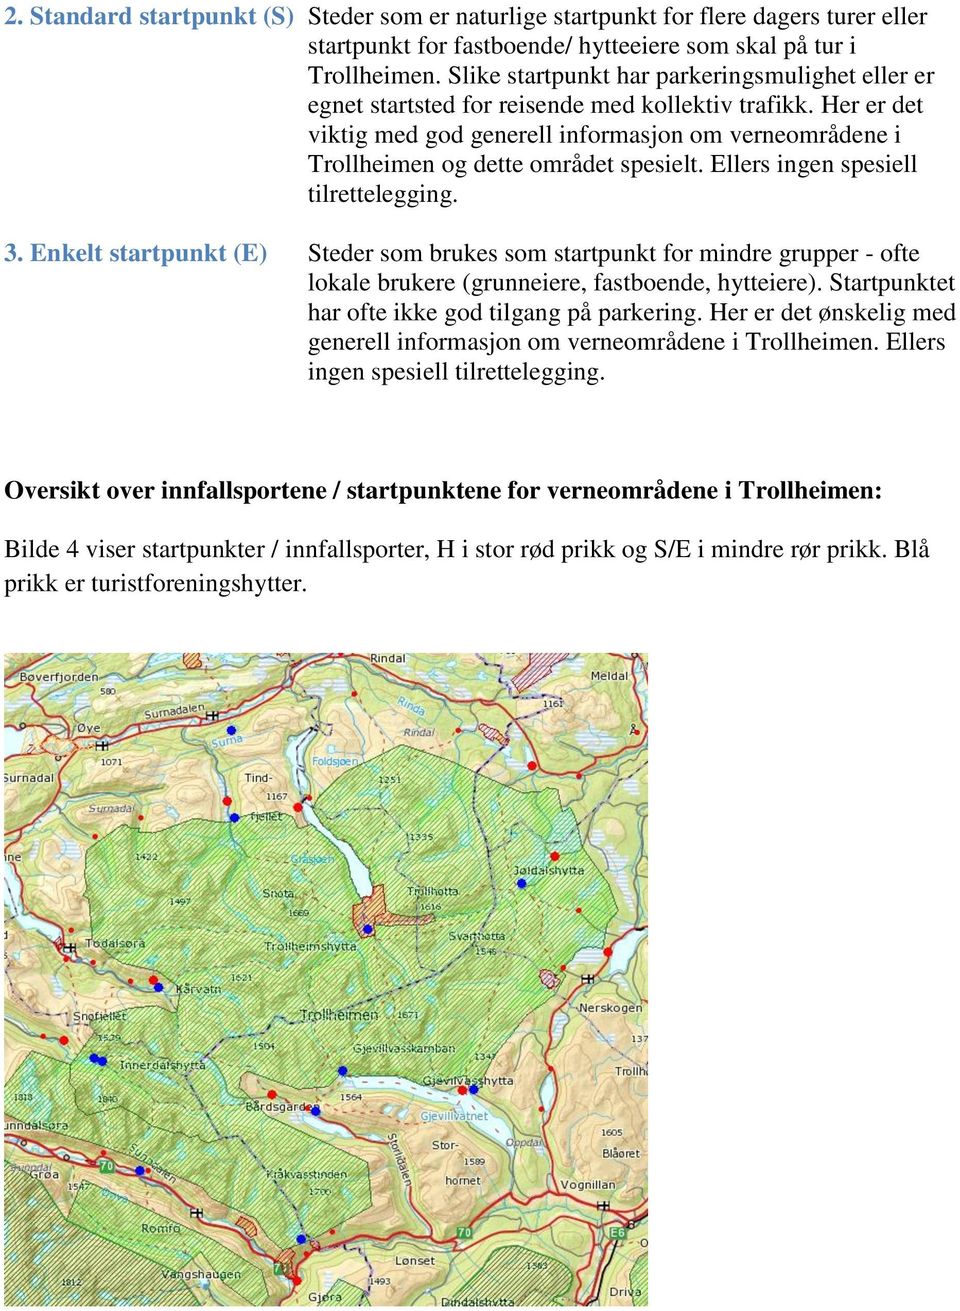 Her er det viktig med god generell informasjon om verneområdene i Trollheimen og dette området spesielt. Ellers ingen spesiell tilrettelegging. 3.